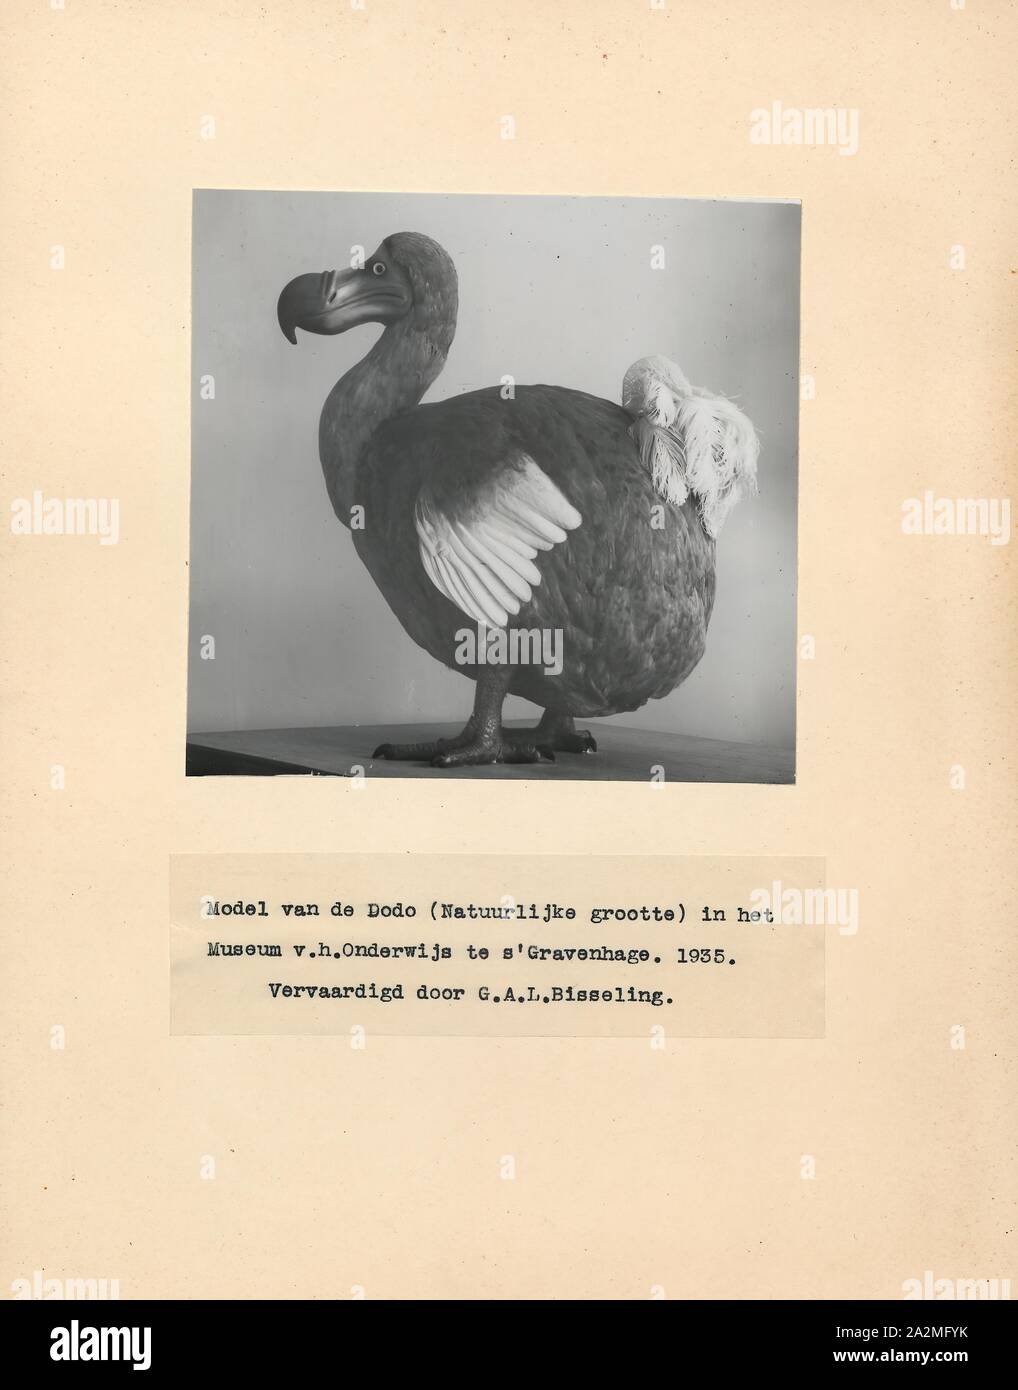 Didus ineptus, Imprimer, le dodo (Raphus cucullatus) est une espèce d'oiseau qui est endémique à l'île Maurice, à l'Est de Madagascar dans l'Océan Indien. Le dodo est le plus proche parent génétique était la aussi disparue, le solitaire de Rodrigues deux formant la sous-famille des Raphinae de la famille des pigeons et tourterelles. Le plus proche parent encore vivant du dodo est le pigeon. Un livre blanc a été dodo une fois que suppose l'existence sur l'île voisine de la réunion, mais c'est pensé pour avoir été la confusion sur la base ibis de la réunion et de peintures de dodos blanc Banque D'Images